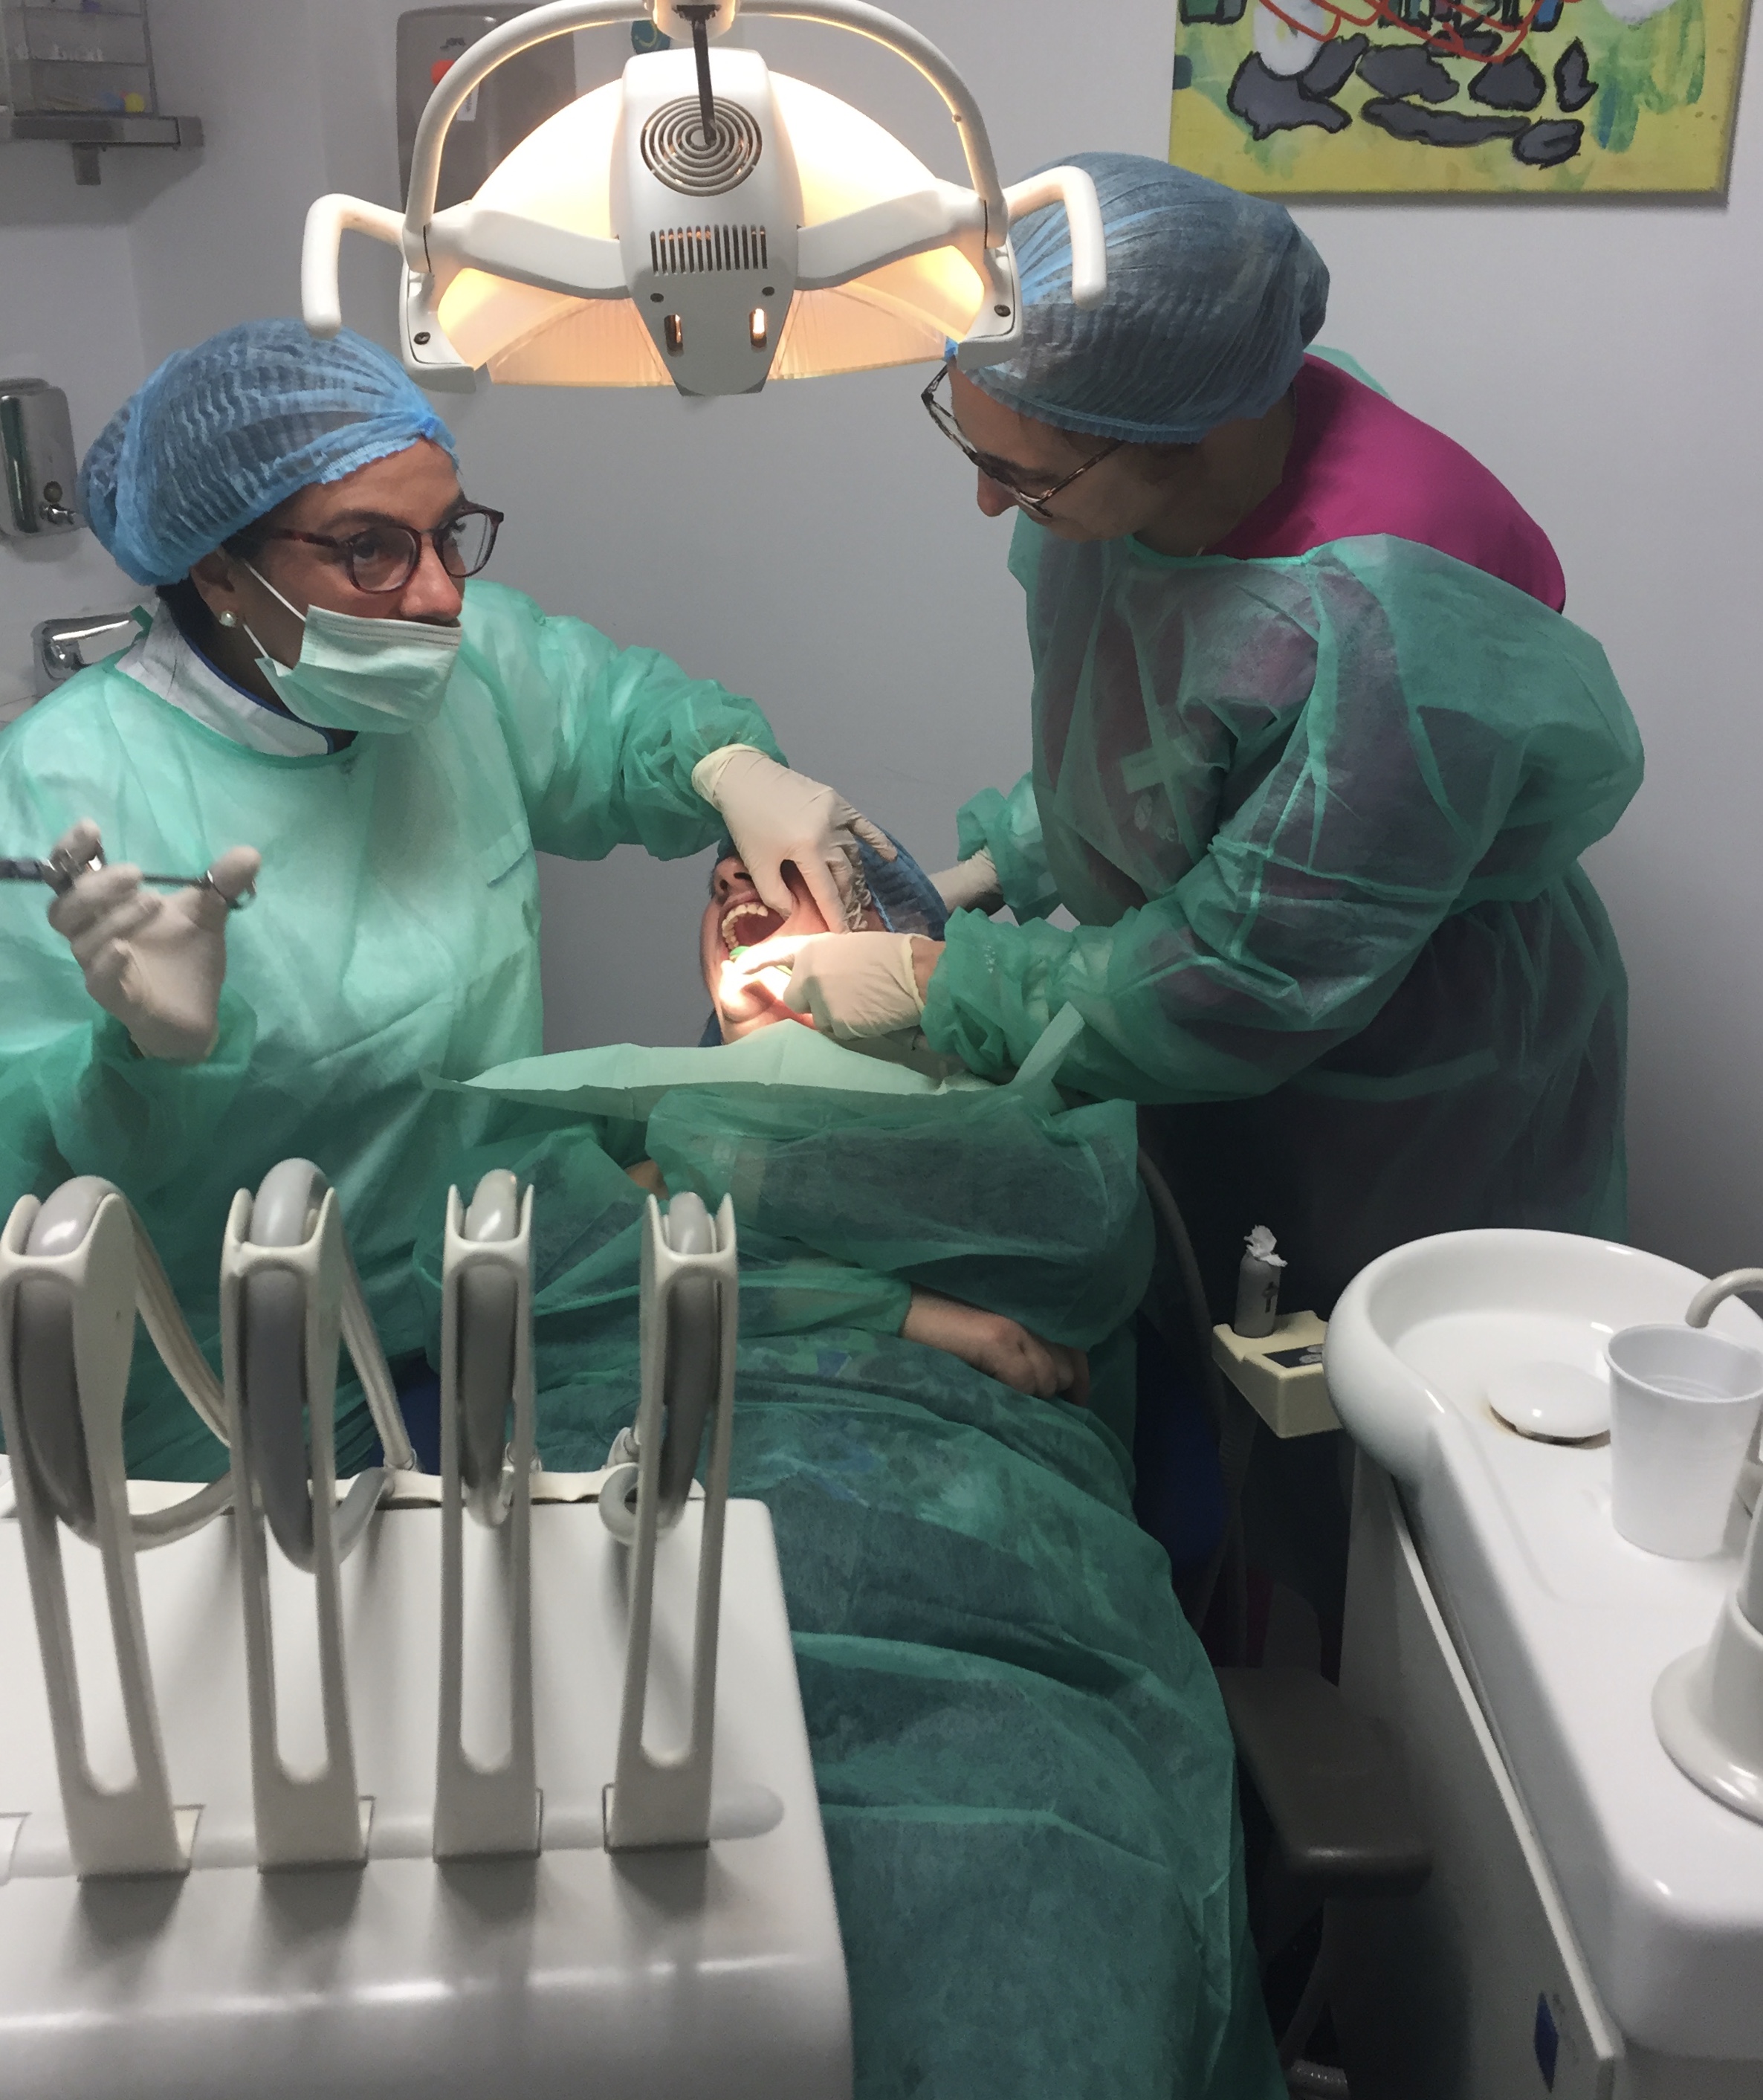 Implantología dental en Carabanchel - intervención